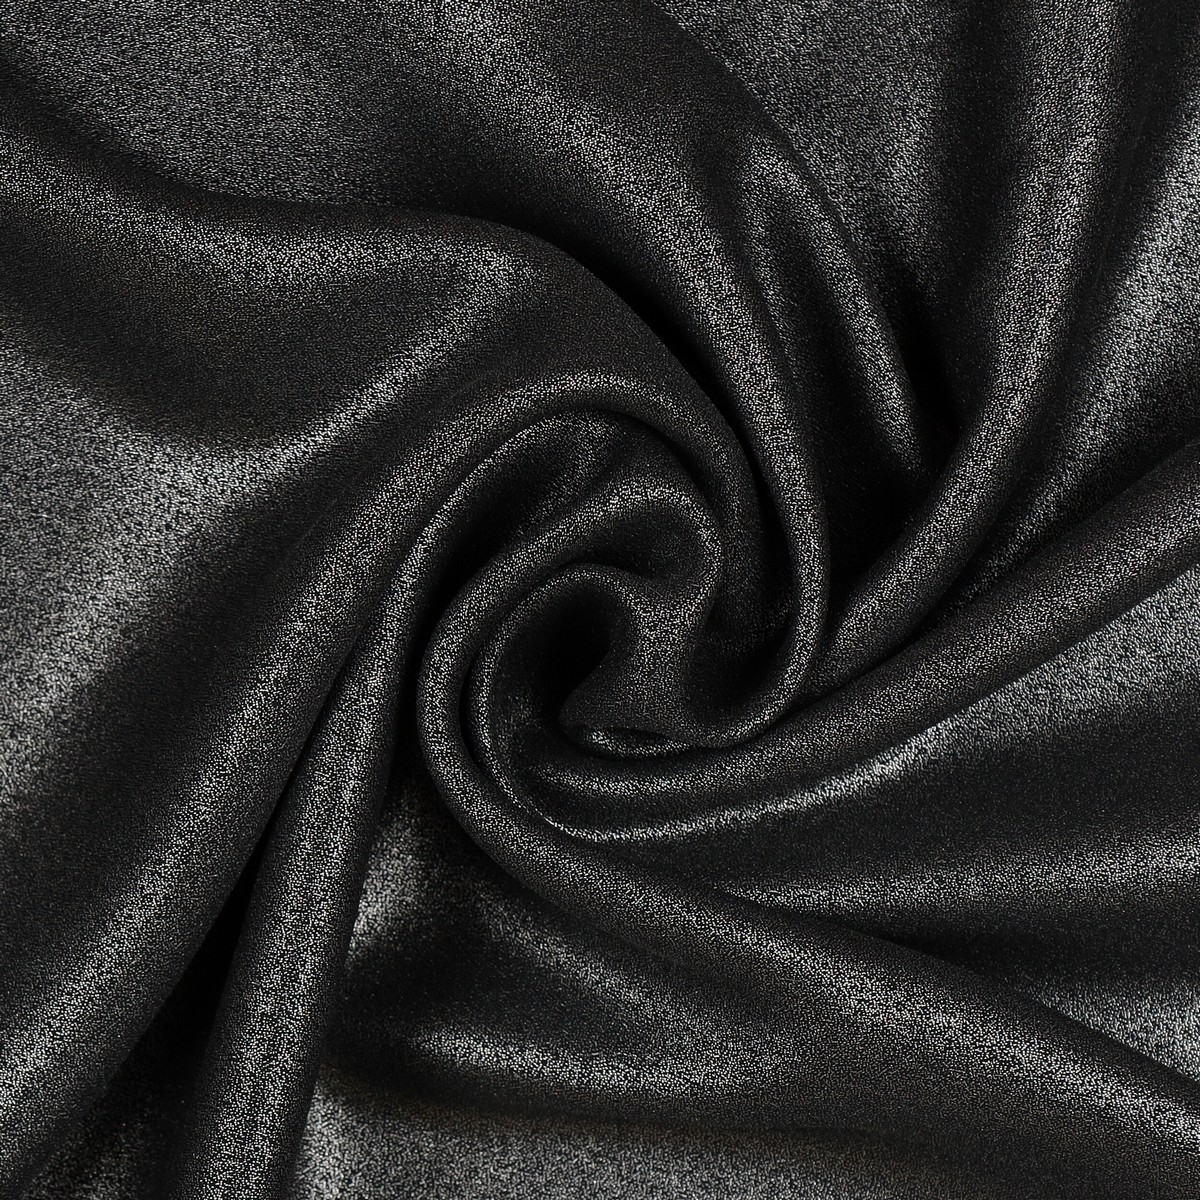 Tessuto Chiffon Glitter - Colore Nero - Glitter Argento - Mezzo